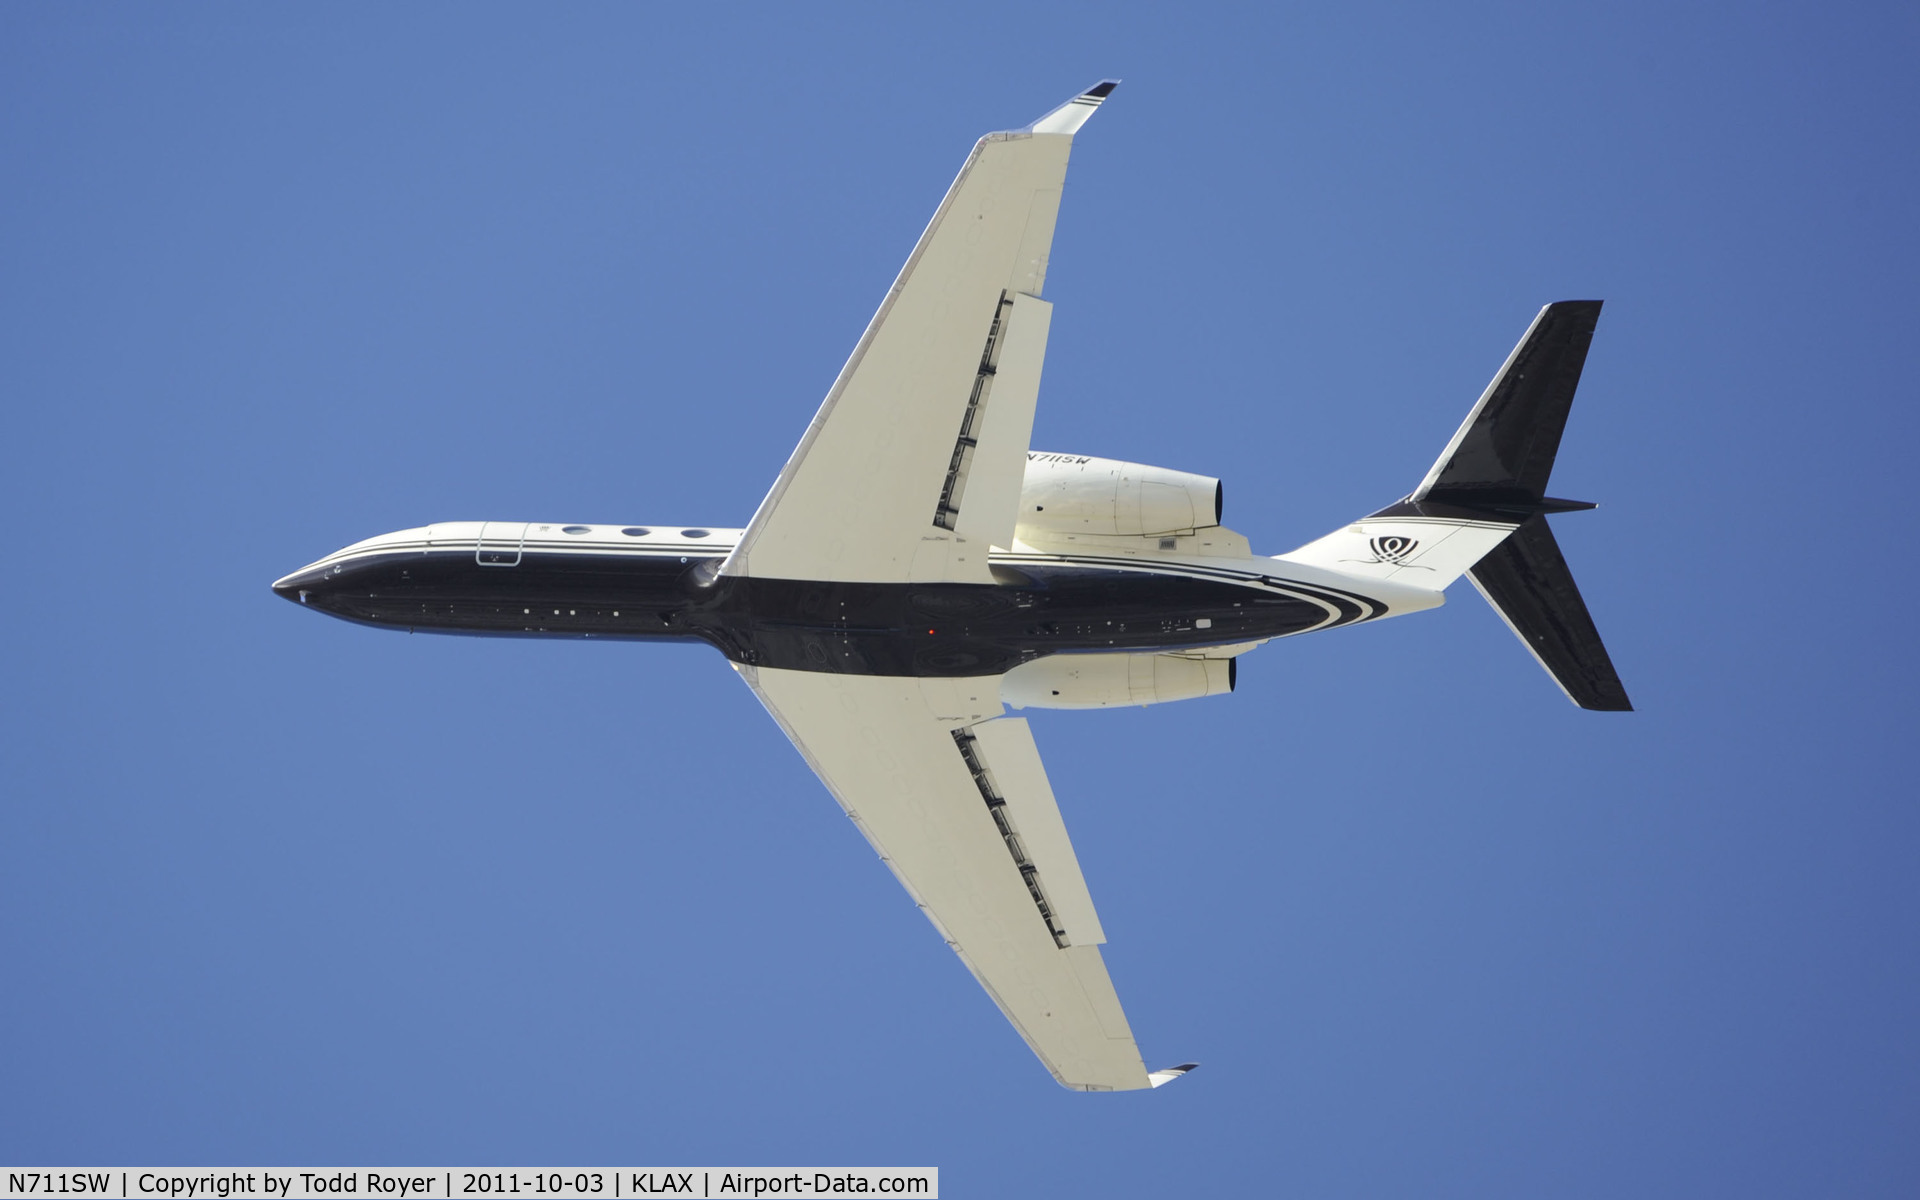 N711SW, 2007 Gulfstream Aerospace GIV-X (G450) C/N 4085, Departing LAX